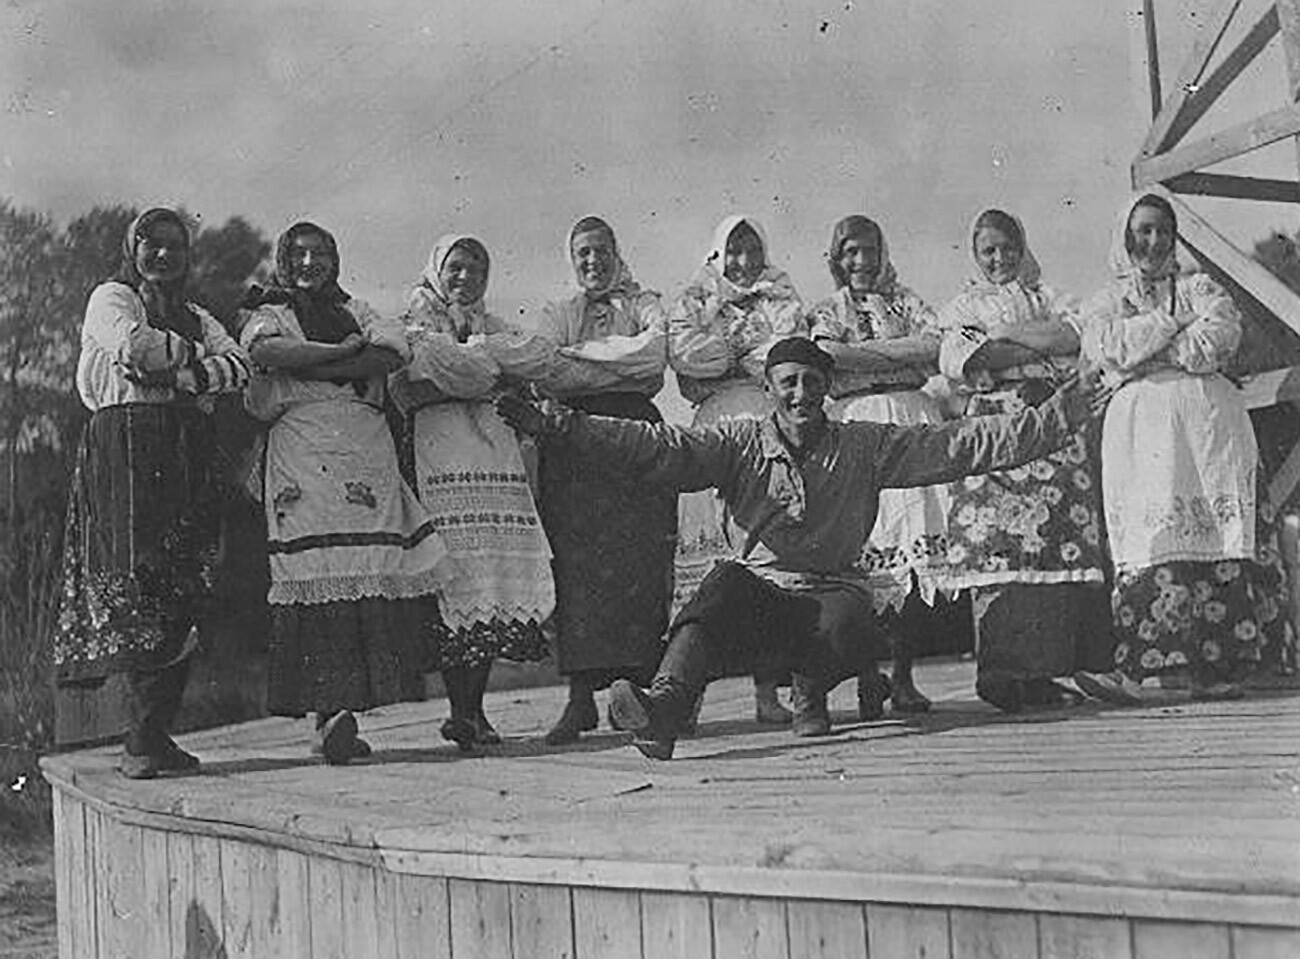 Danse folklorique dans les années 1930